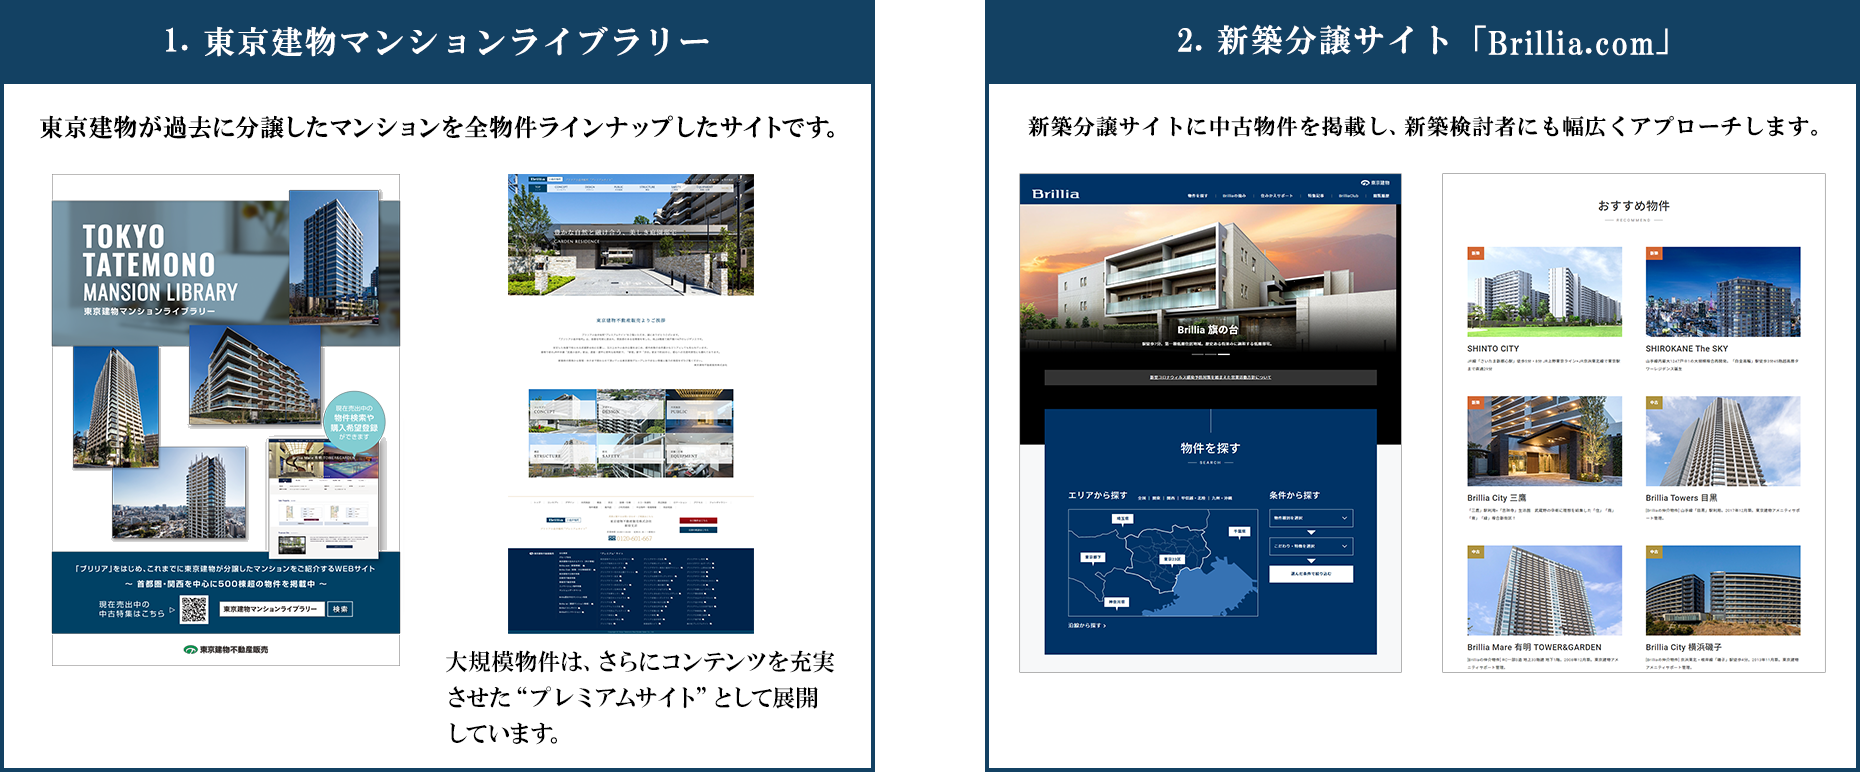 1.東京建物マンションライブラリー 2.新築分譲サイト「Brillia.com」